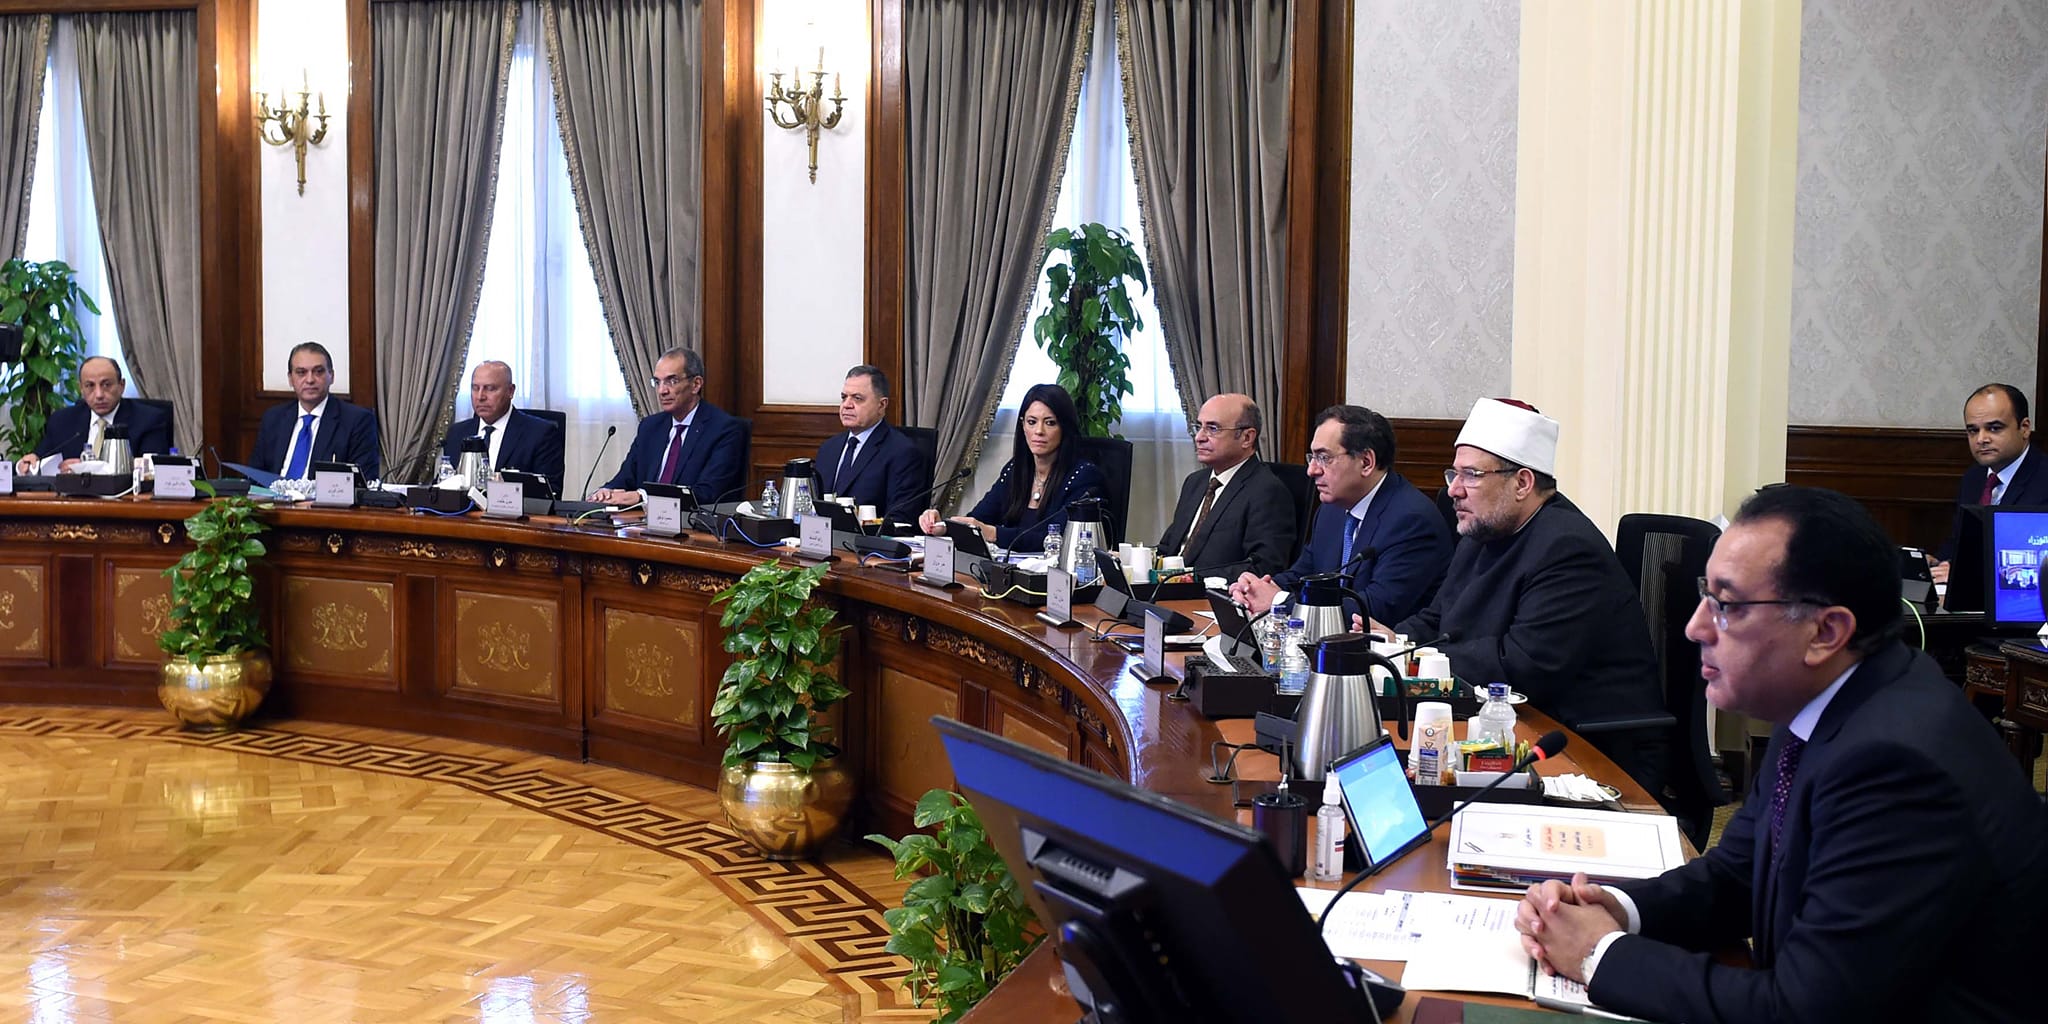 مصطفى مدبولي رئيس مجلس الوزراء خلال الاجتماع الوزاري